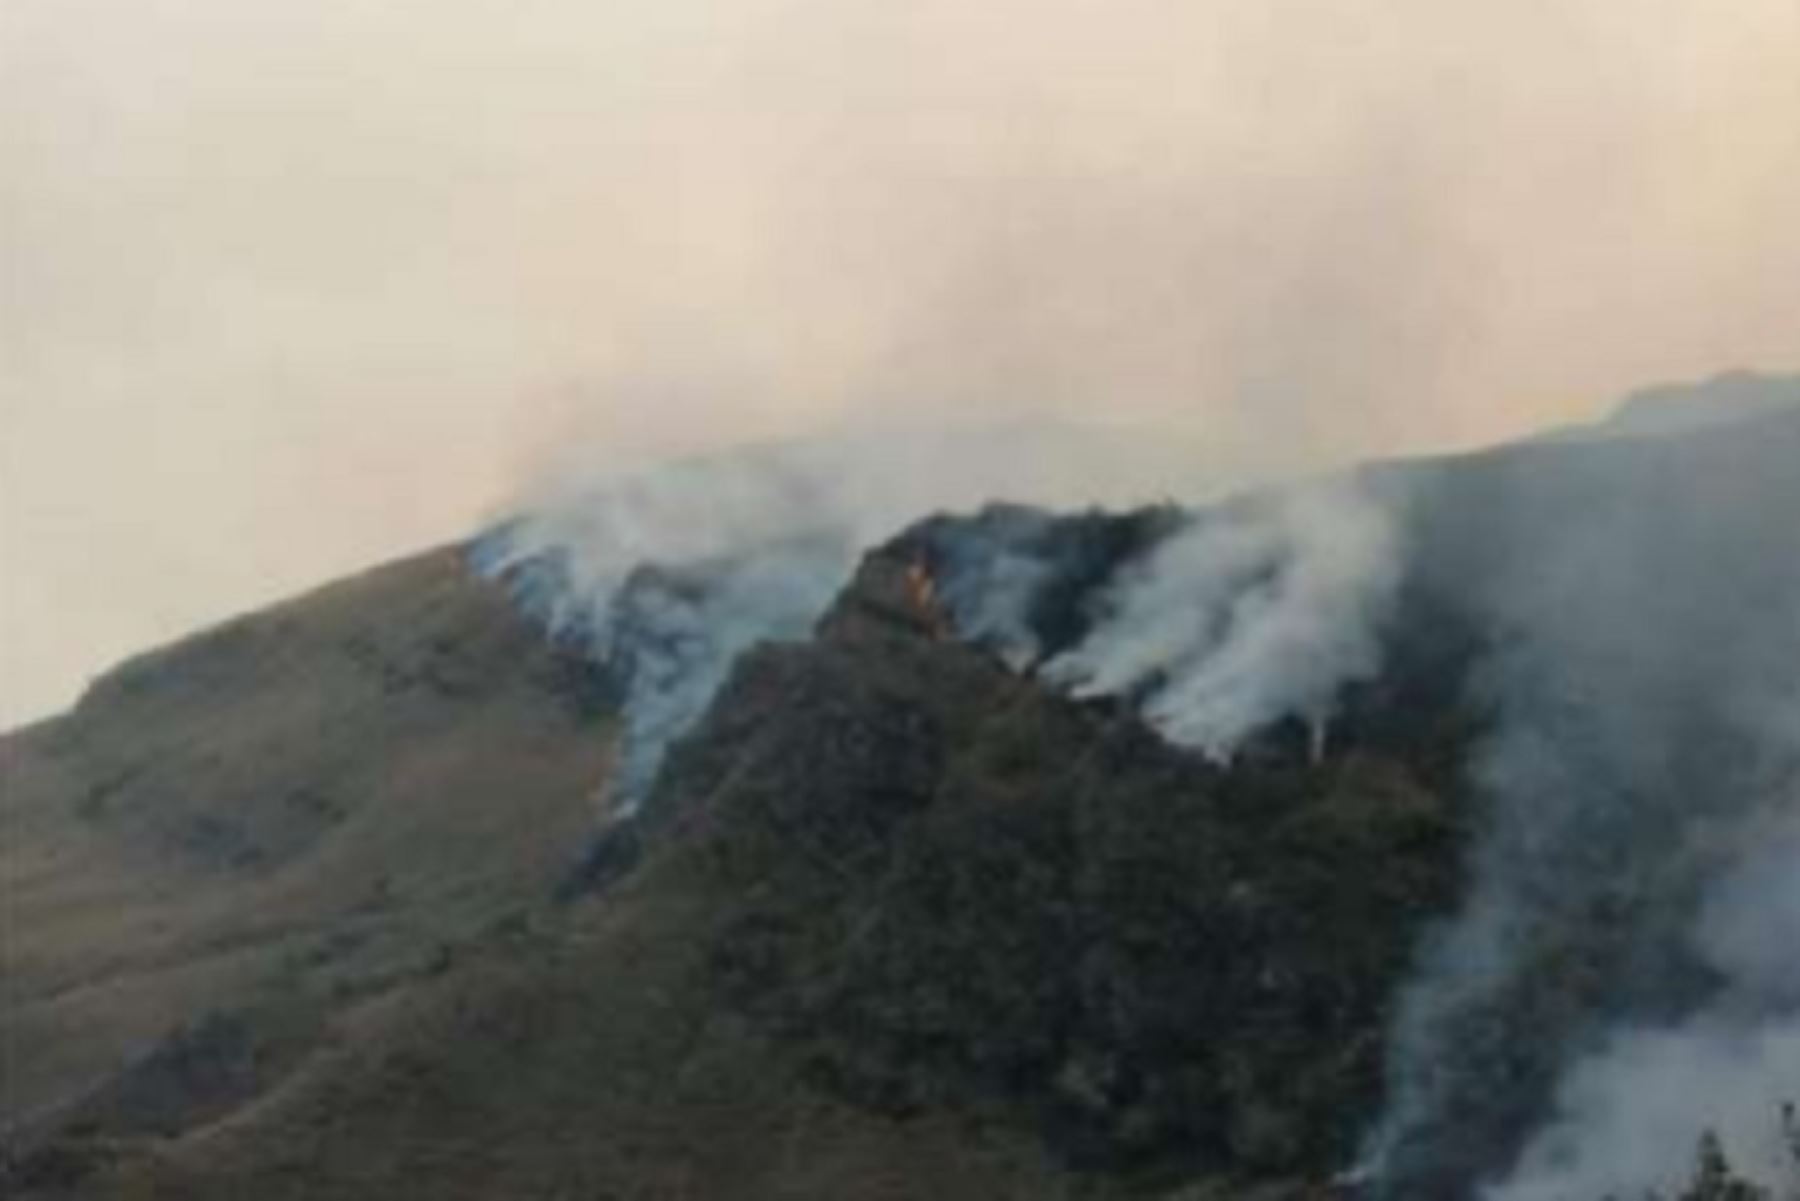 El incendio forestal que se registró en el distrito cusqueño de Challabamba, provincia de Paucartambo, destruyó 1,500 hectáreas de cobertura natural en las comunidades de Sunchubamba, Jajahuana y Pastogrande, según el informe preliminar del Instituto Nacional de Defensa Civil (Indeci).